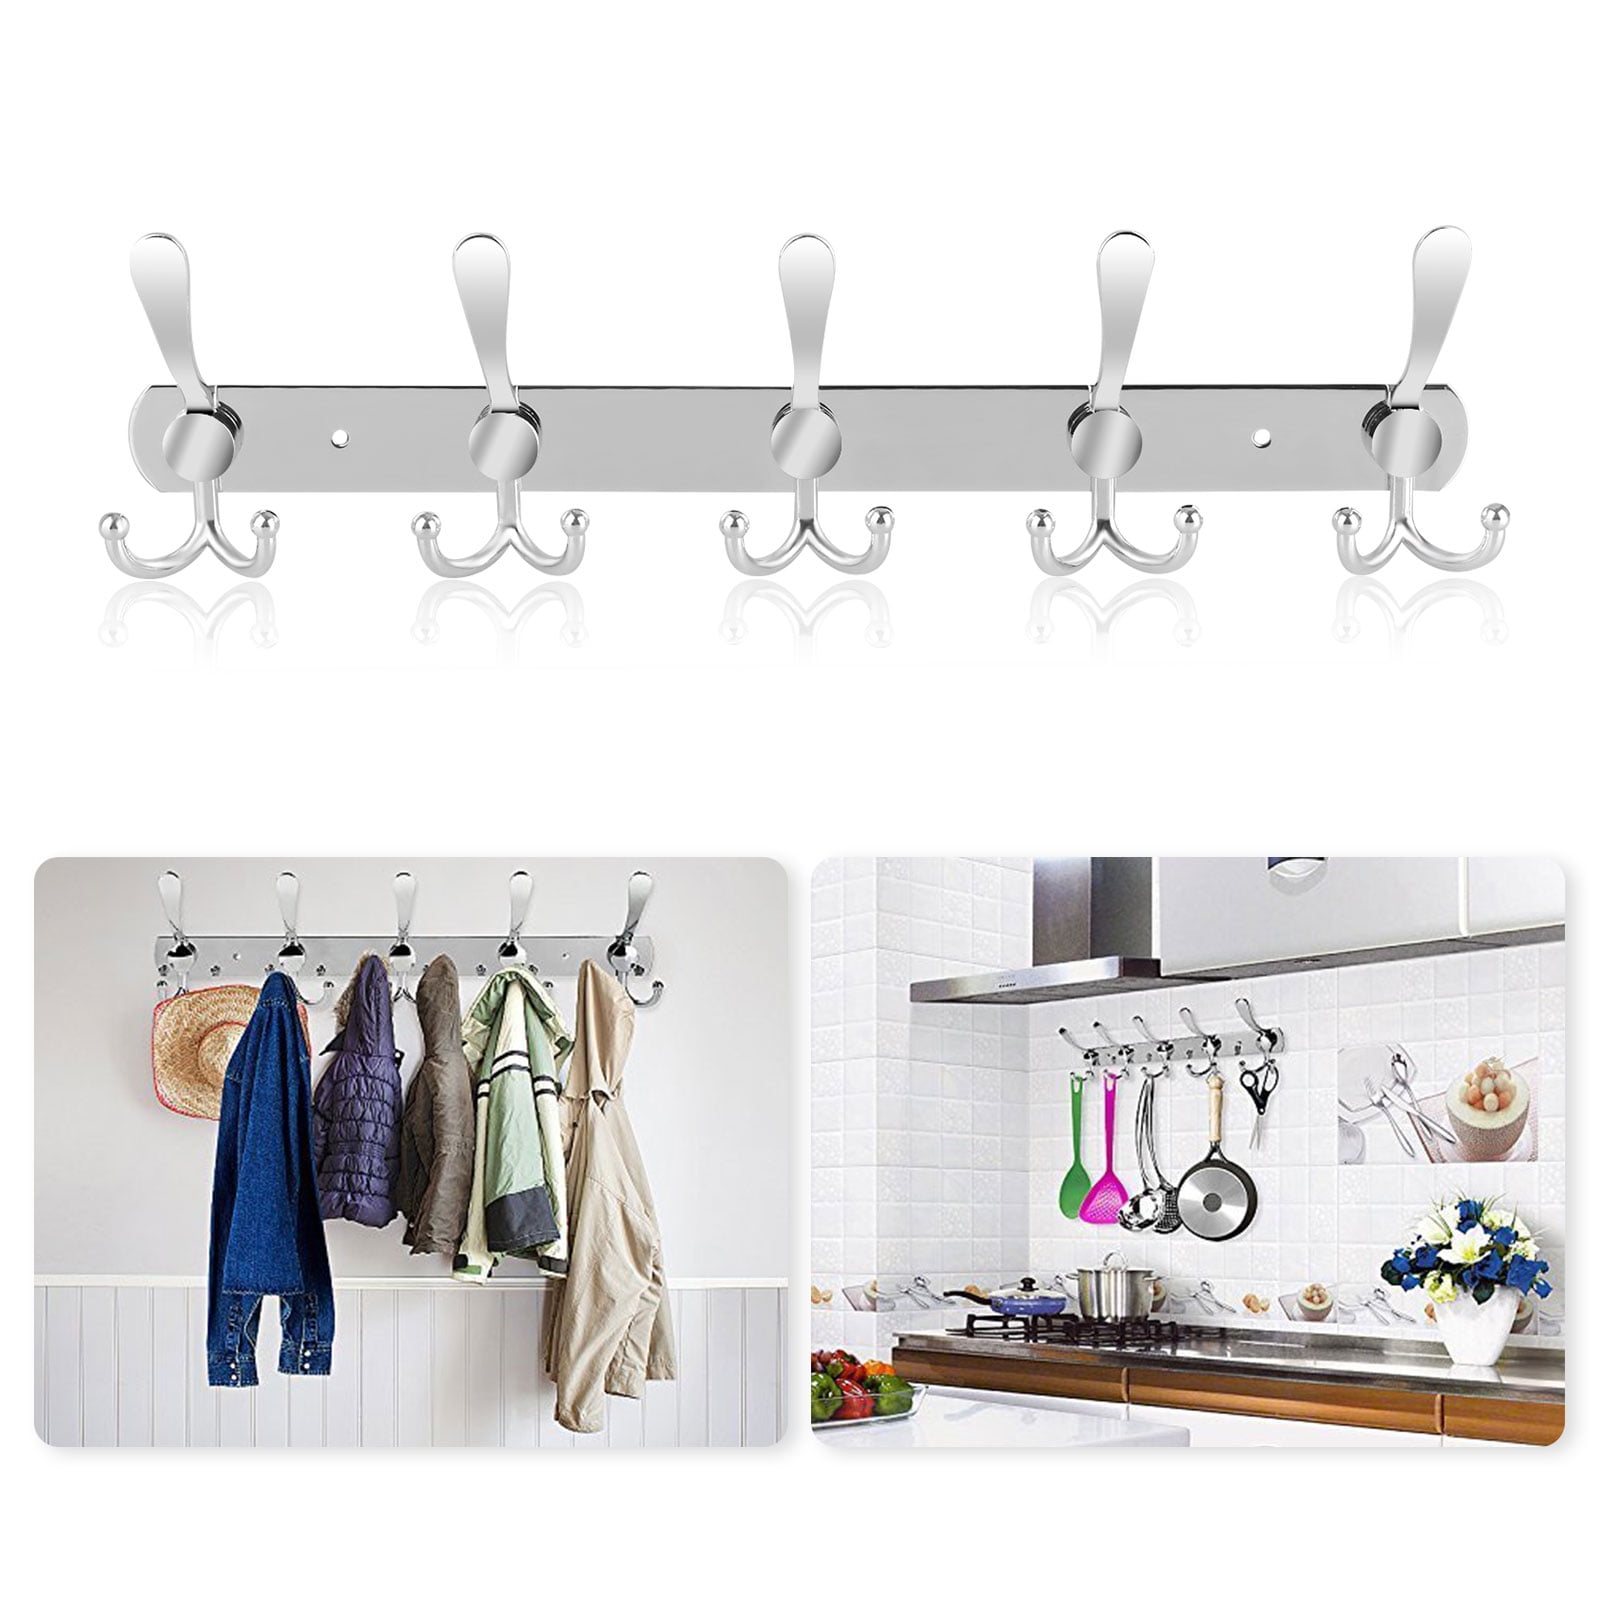 Heavy Duty Hanging Organizer for Bedroom Kitchen Over The Door Hook Hanger with 4 Hooks Towel Rack for Bathroom Door Black Decorative Metal Bath Hanger for Coat Robe Bag